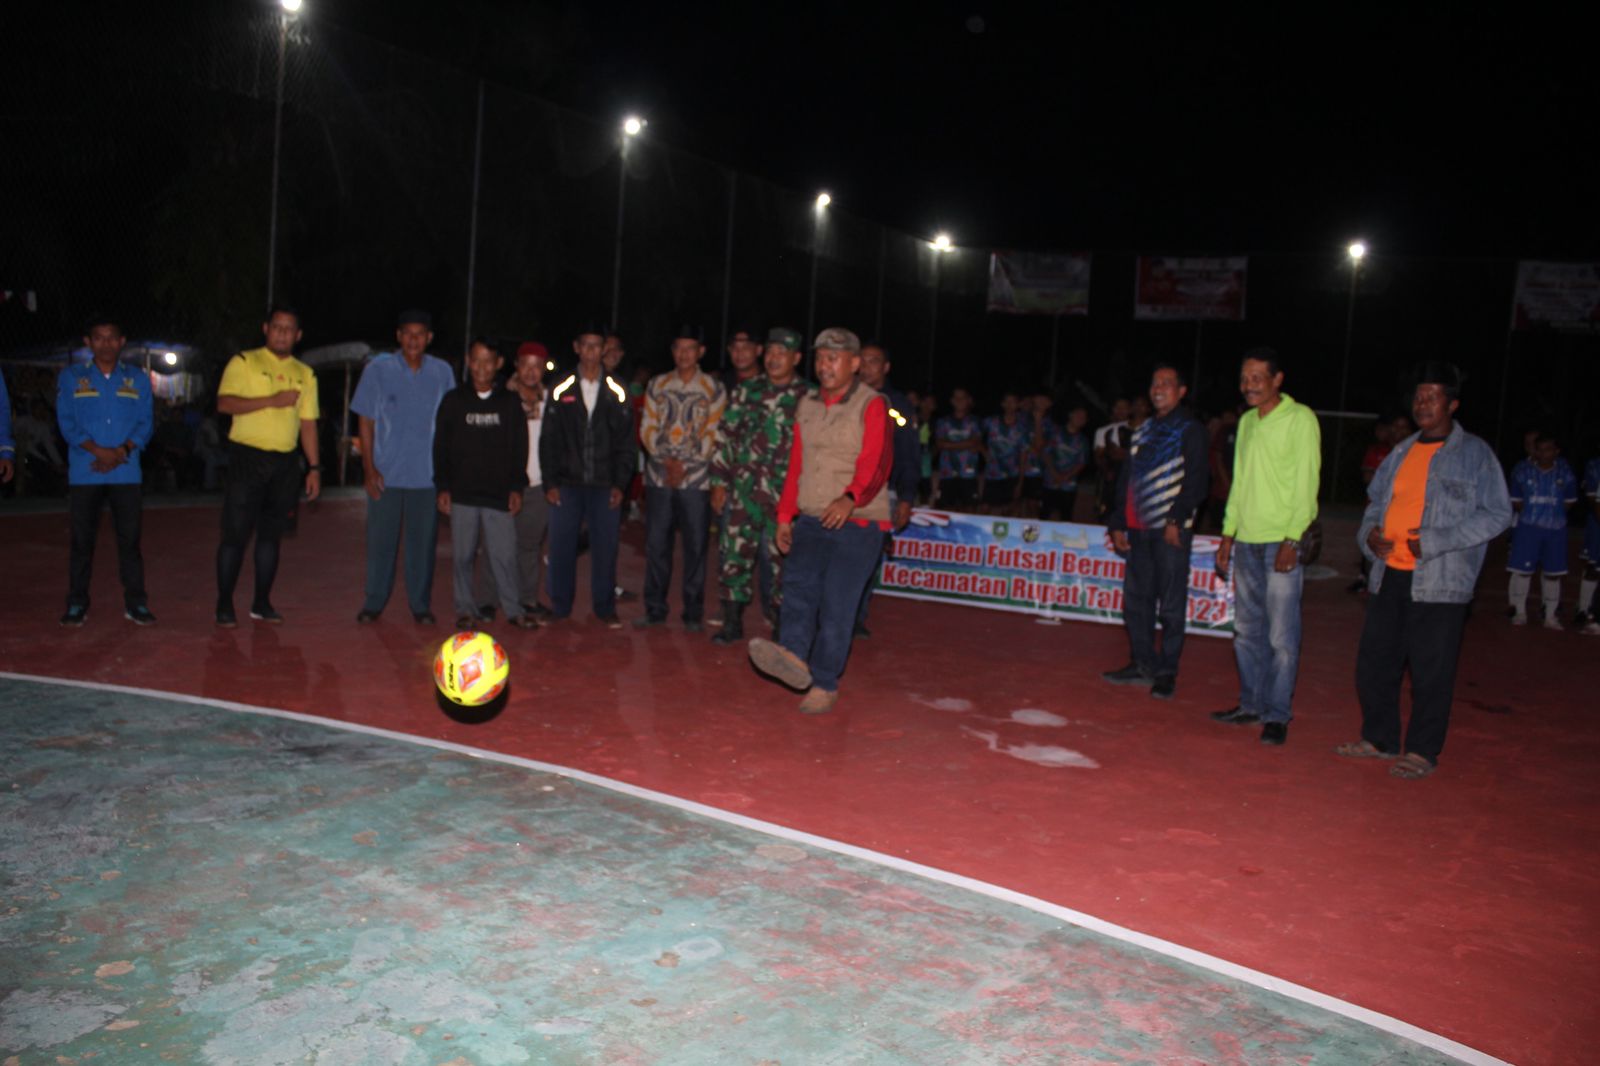 Camat Rupat Buka Secara Resmi Turnamen Futsal Bermasa Cup II Kecamatan Rupat